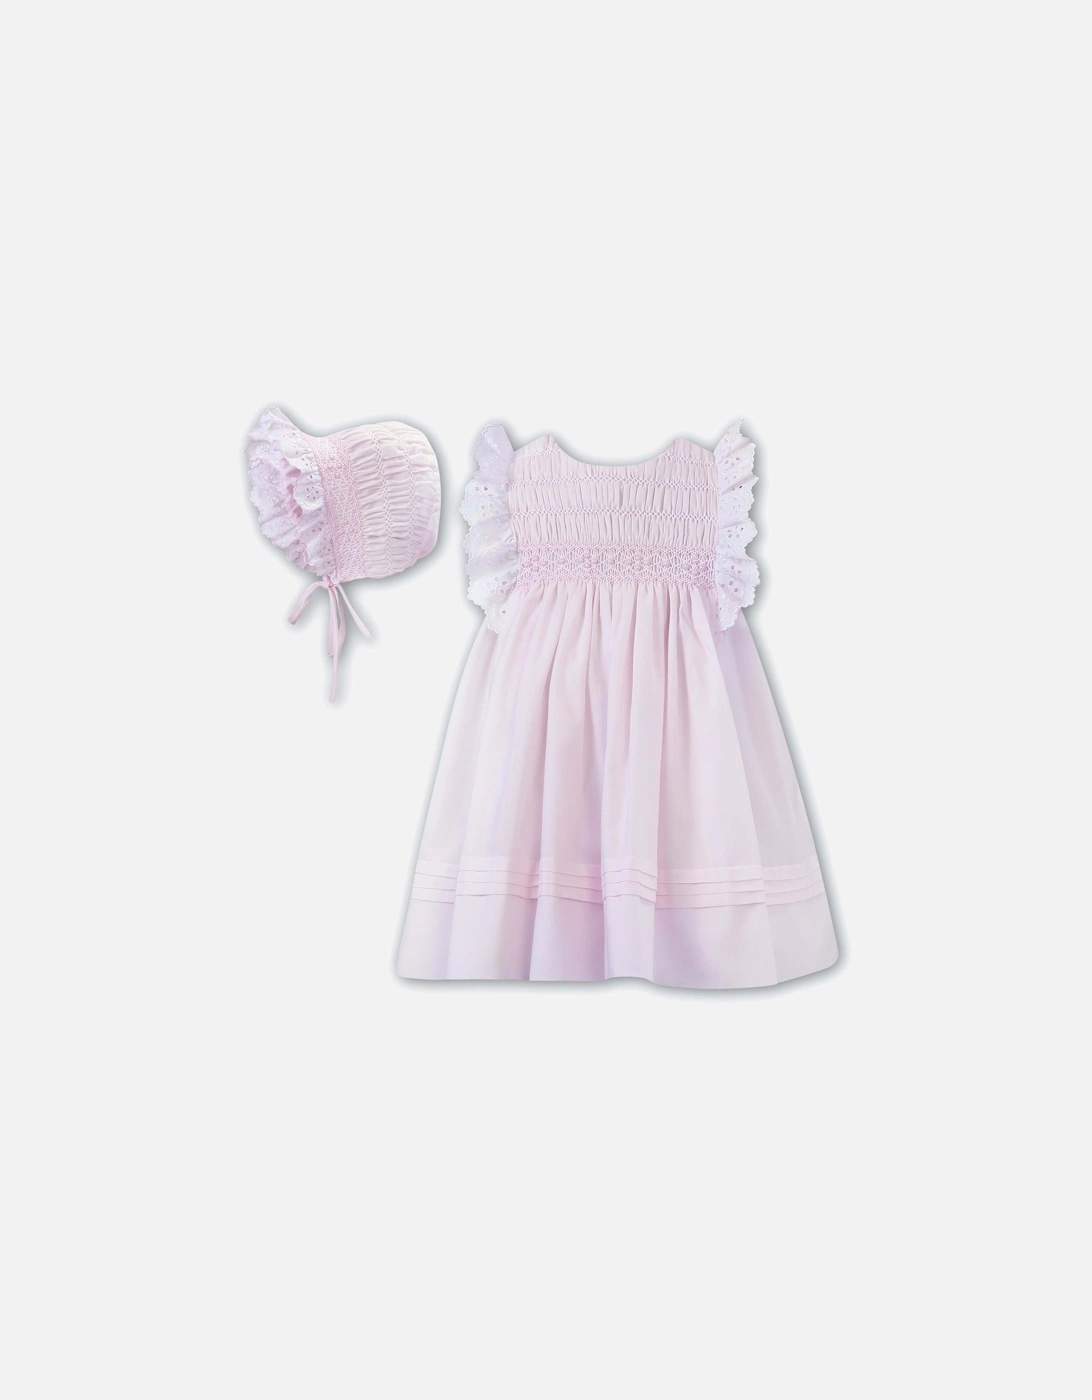 Girls Pink Dress & Bonnet, 2 of 1